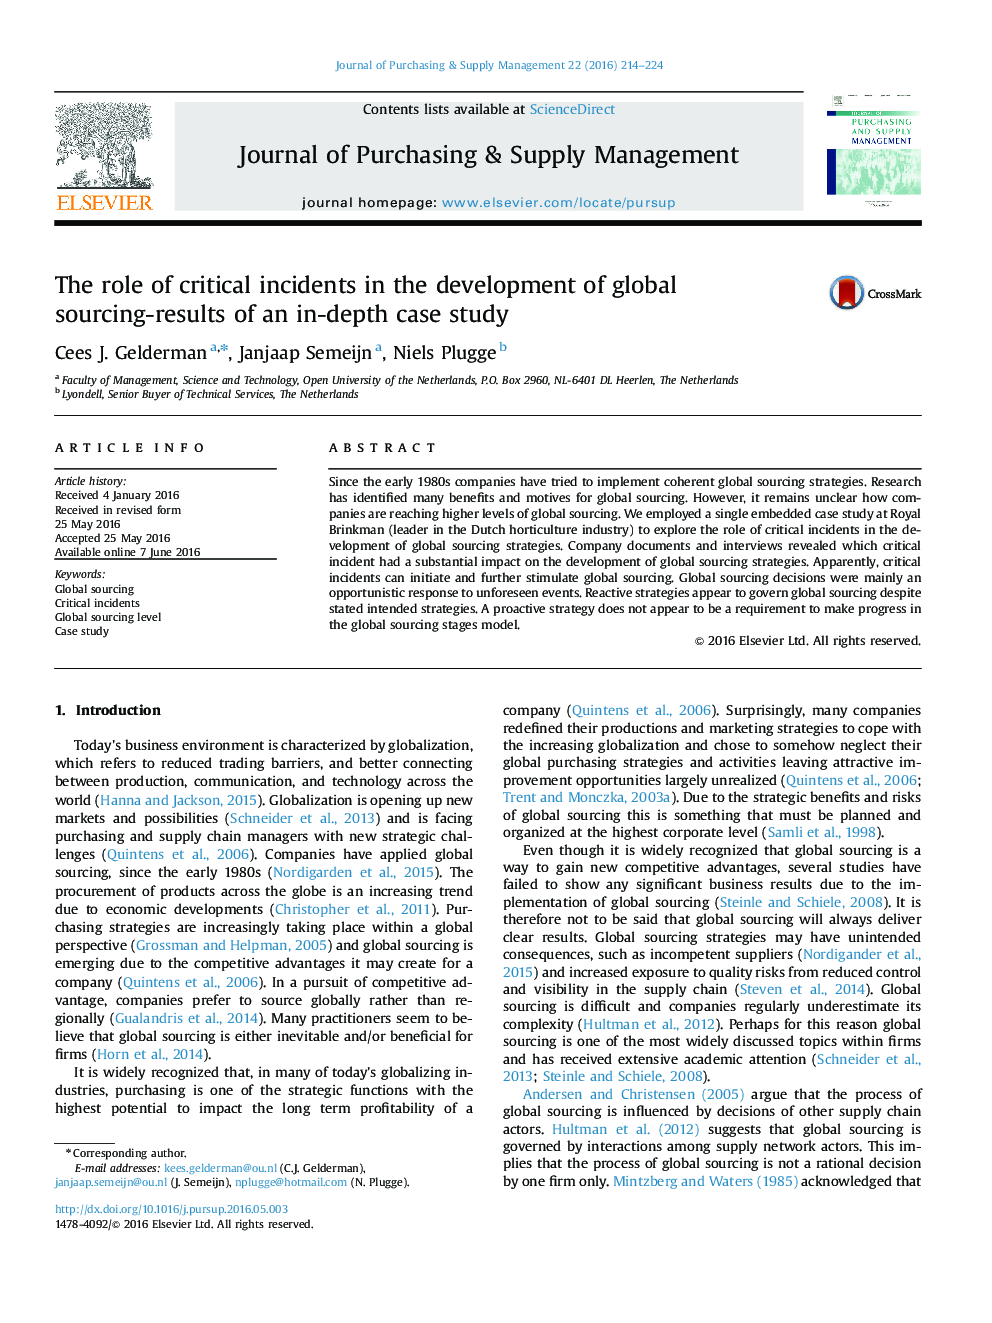 نقش حوادث بحرانی در توسعه جهانی منابع؛ نتایج حاصل از یک مطالعه عمیق موردی 